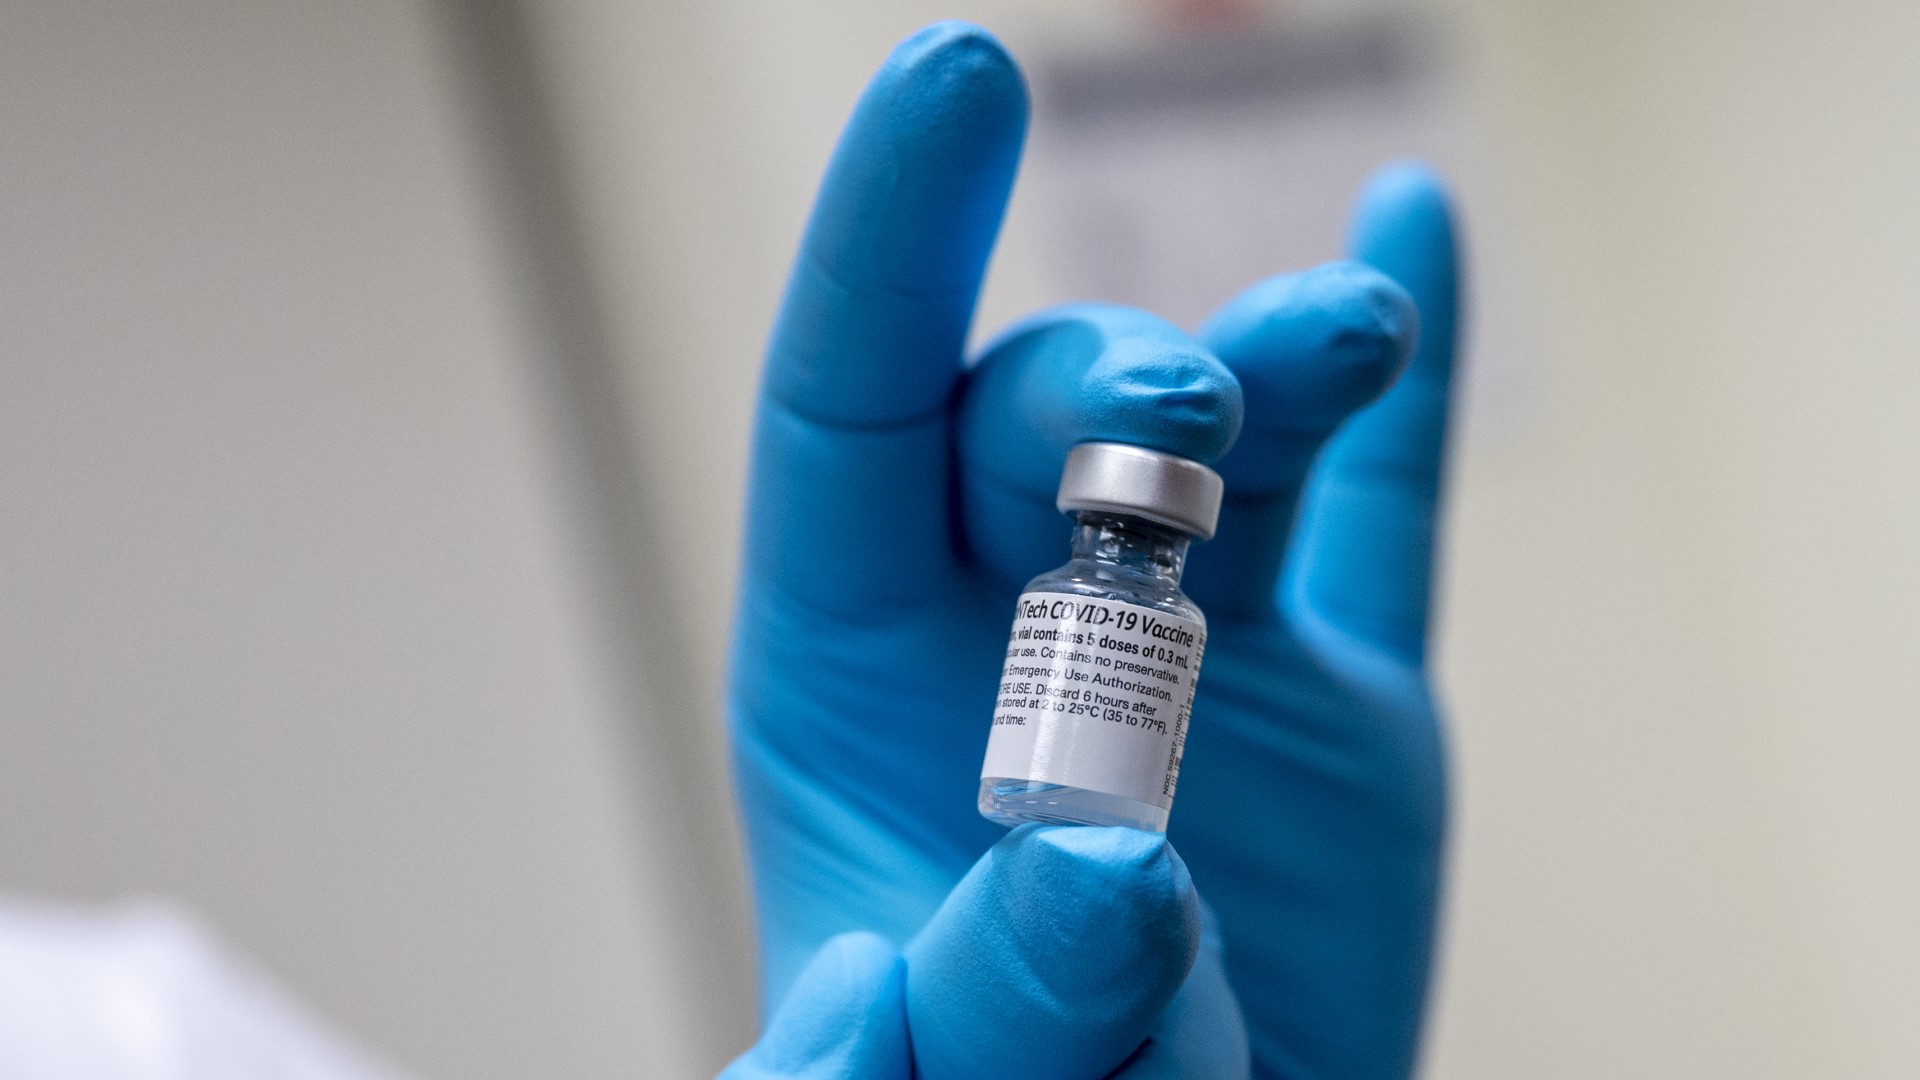 ศูนย์ควบคุมโรค, อ.ย. สหรัฐฯ รับรองวัคซีน COVID-19 ของไฟเซอร์ใช้กรณีฉุกเฉินในเด็ก 12 – 15 ปี